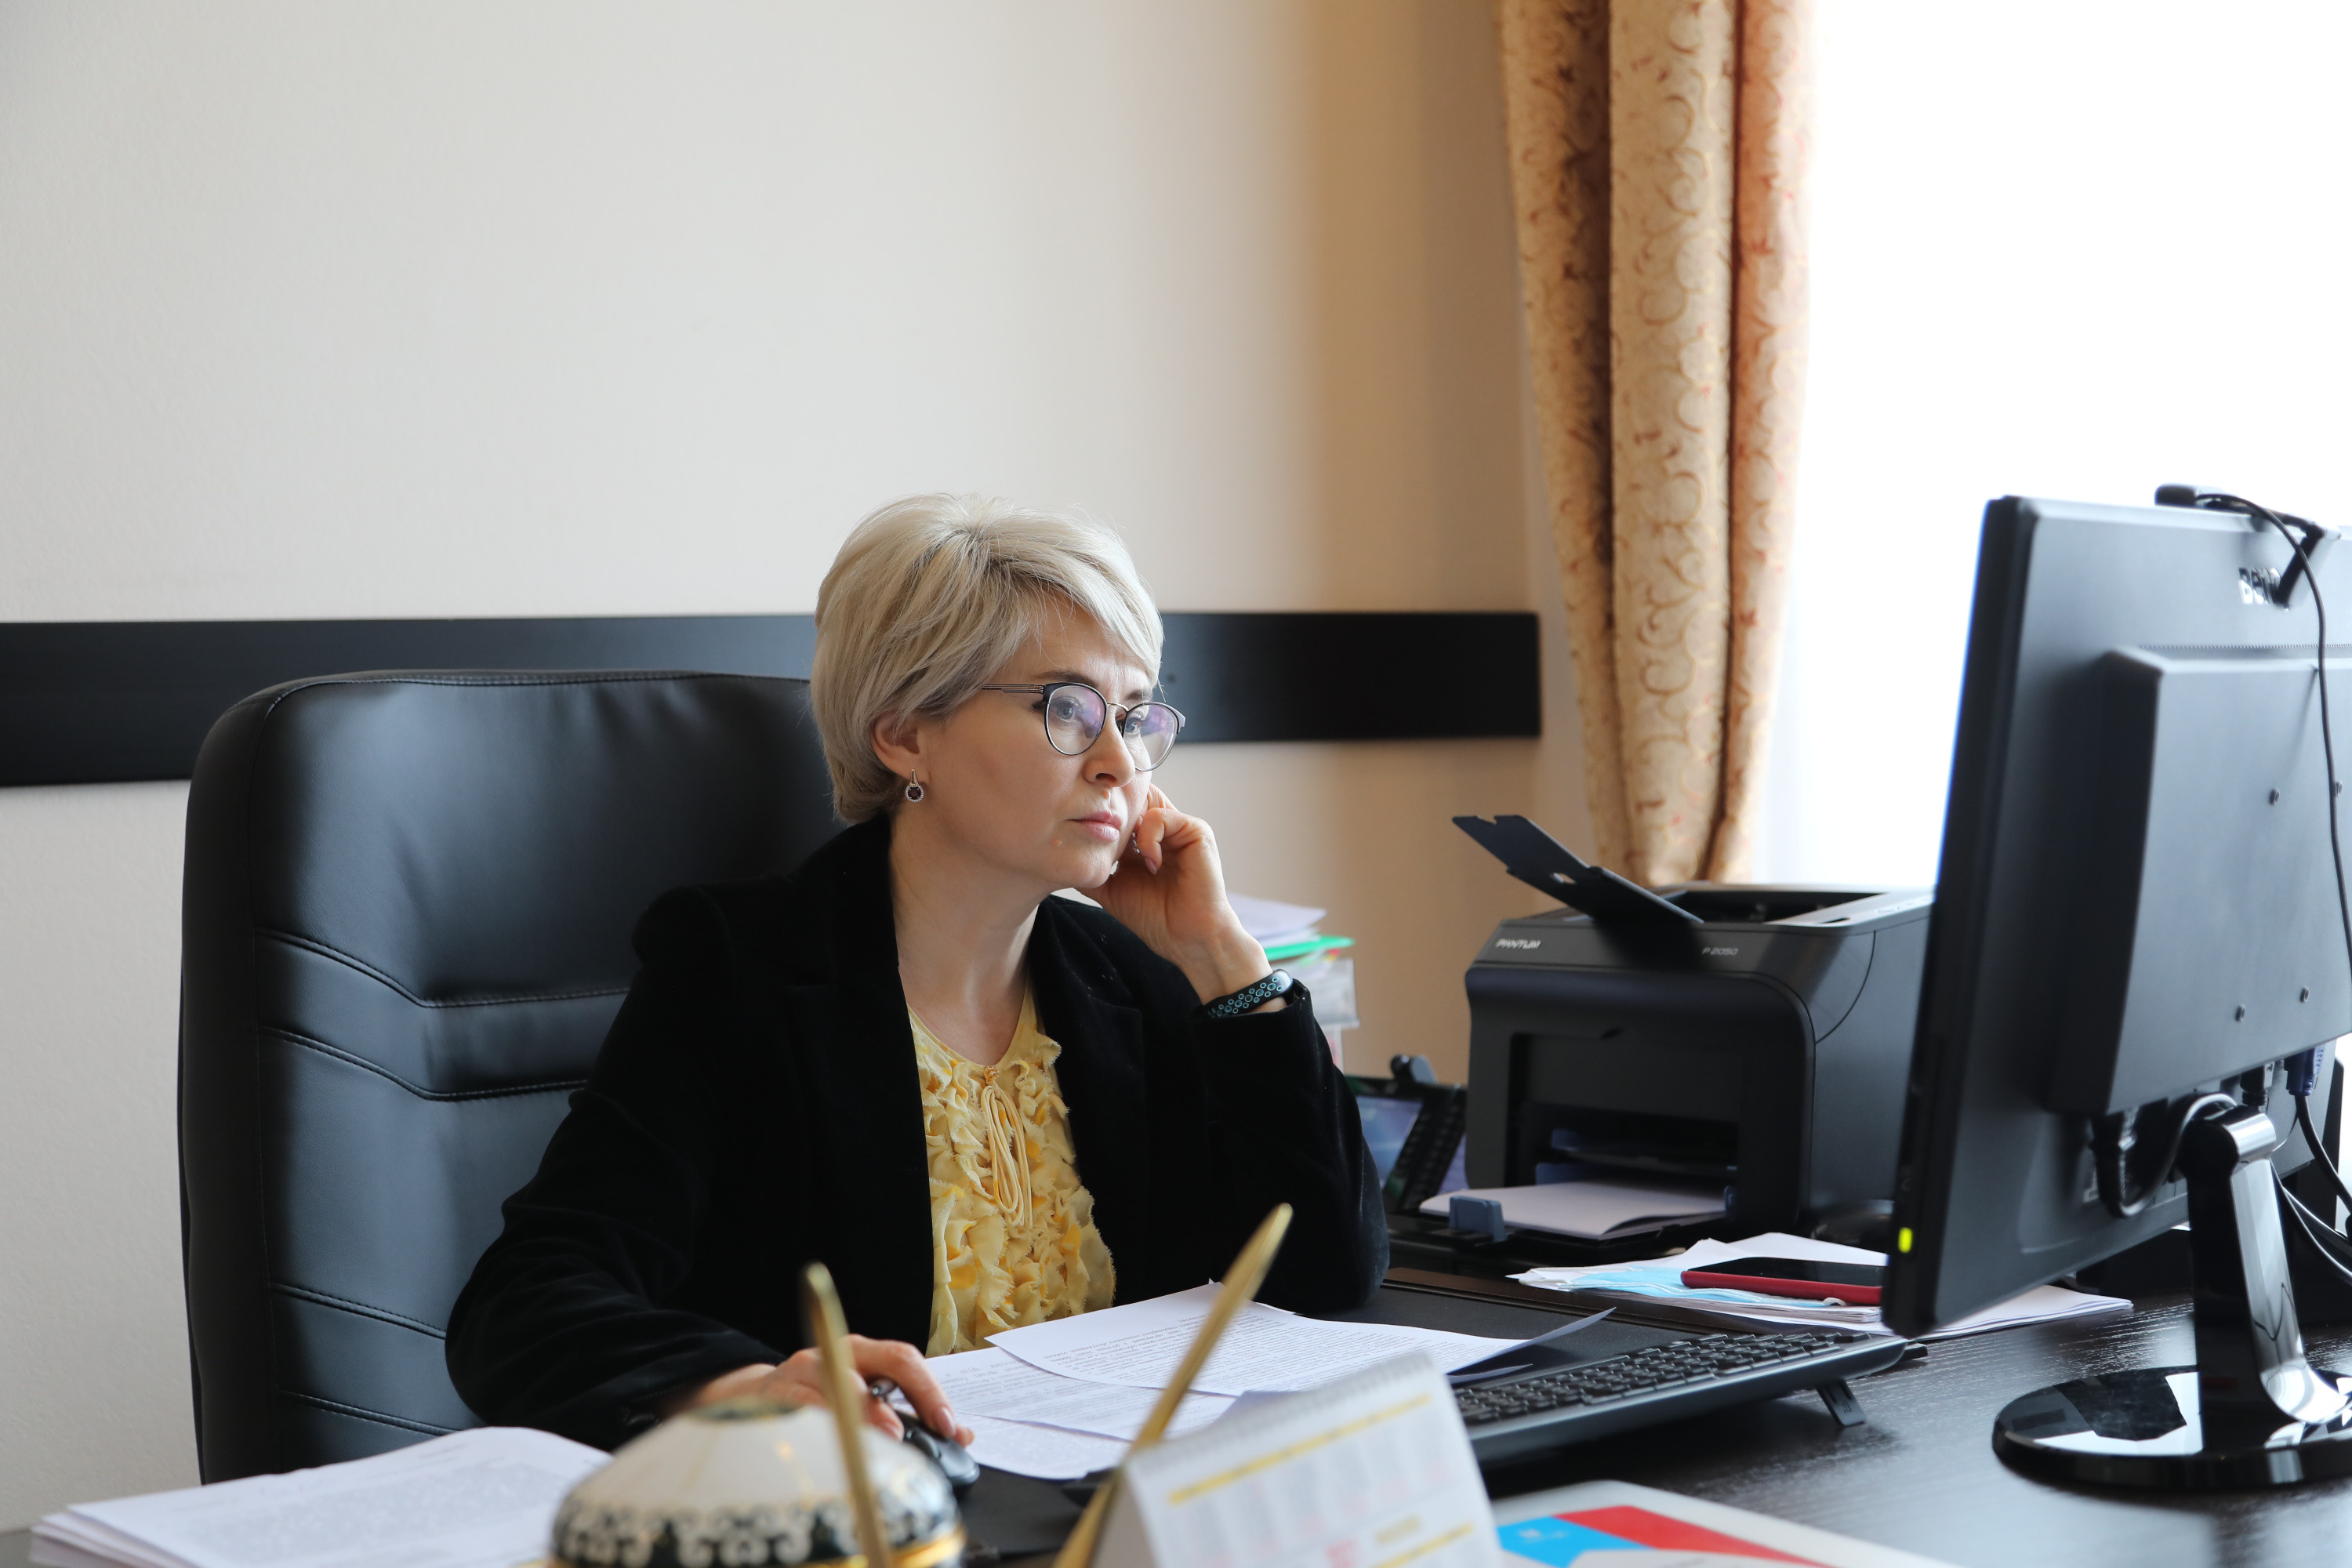 Эльвира Аиткулова была депутатом Курултая V и VI созывов (с 2013 по 2021 годы), депутат Госдумы РФ VIII созыва (с 2021 года)